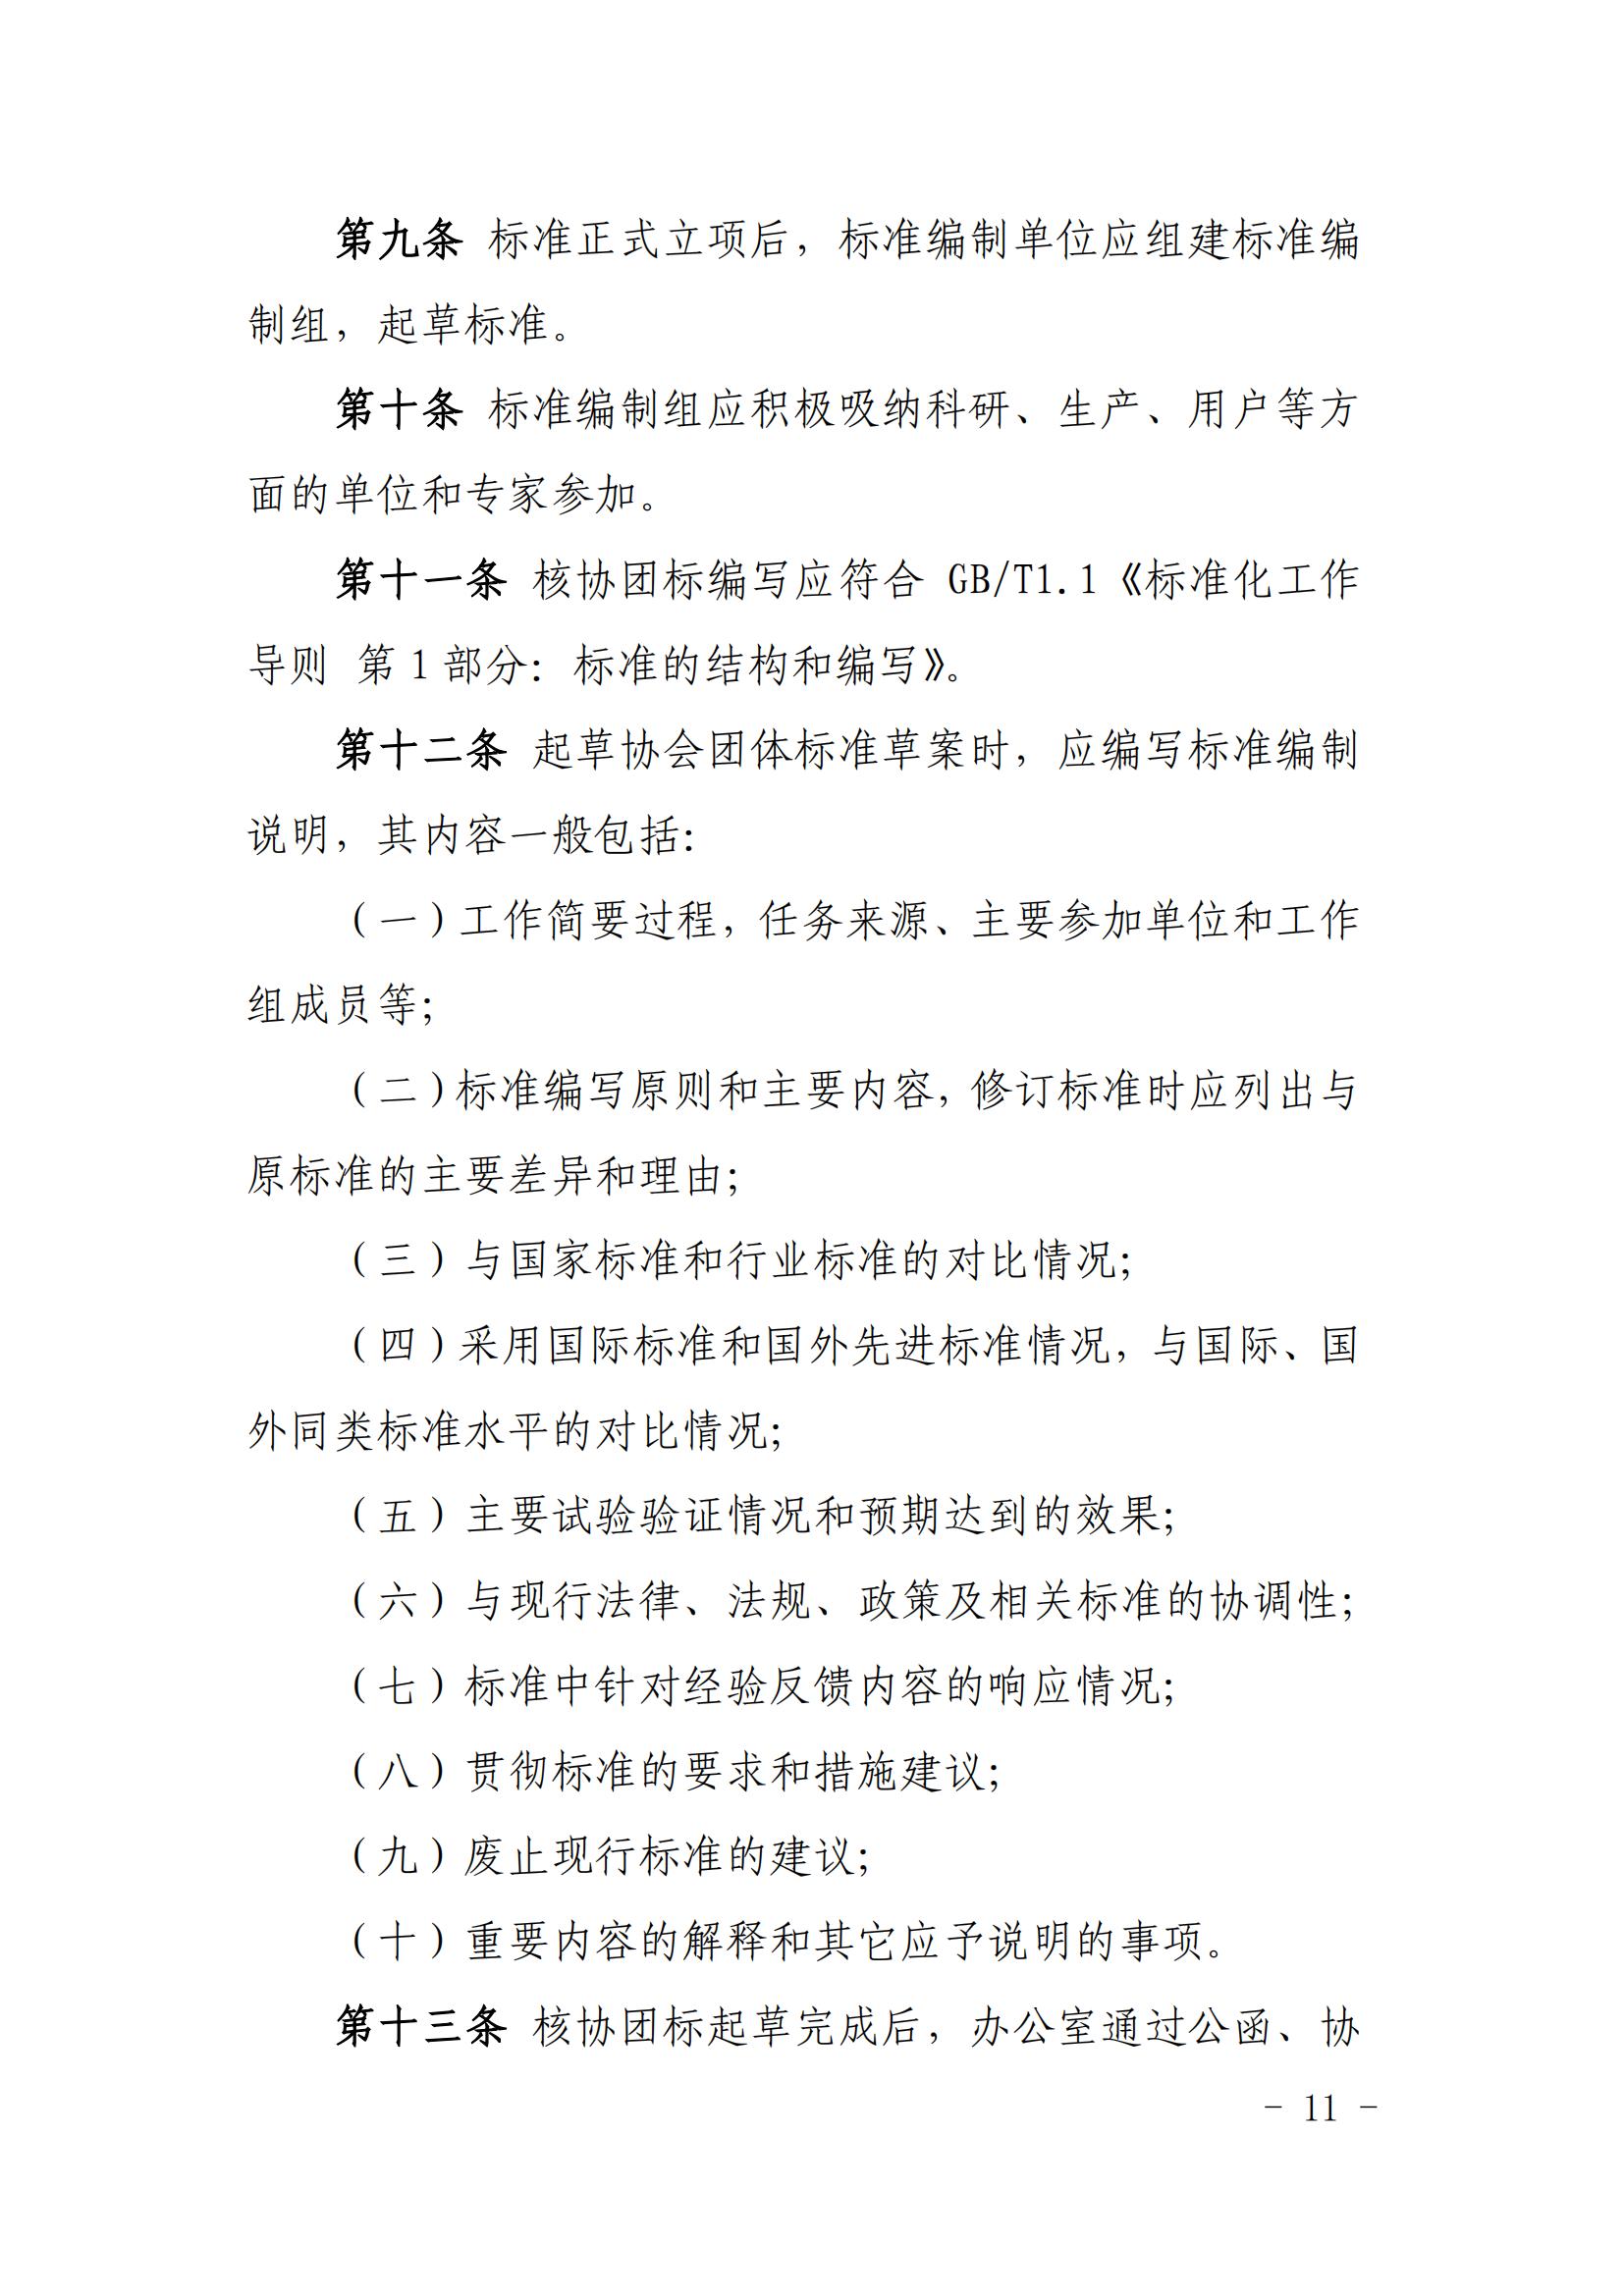 关于印发《中国核能行业协会团体标准管理办法（试行）》和《中国核能行业协会团体标准制修订细则（试行）》的通知_10.jpg